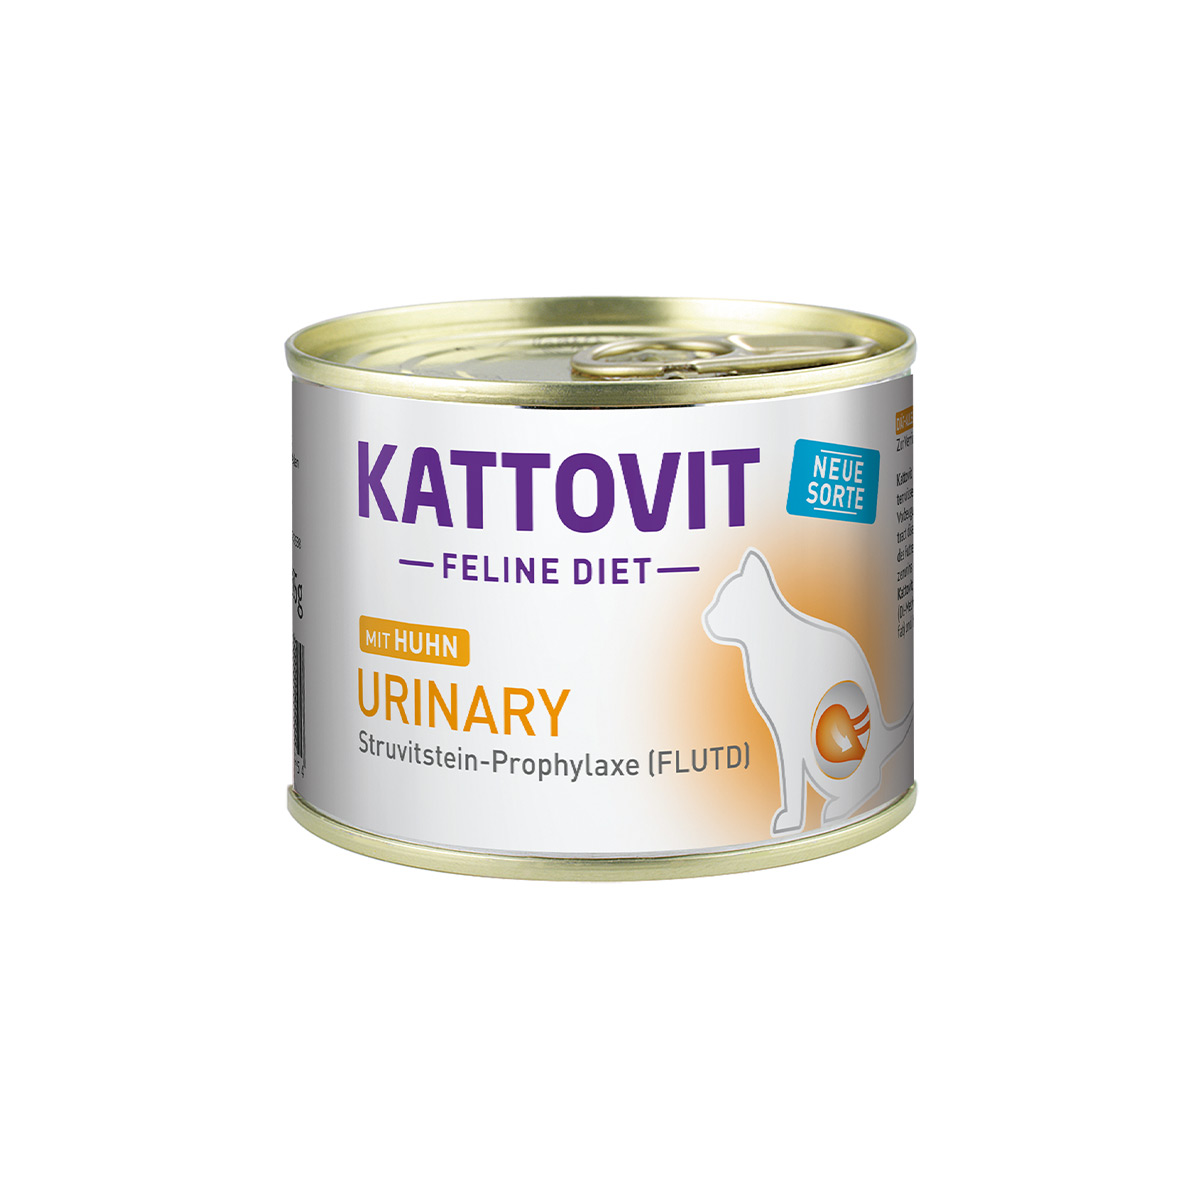 Kattovit Feline Diet Urinary, Kuře 12 × 185 g